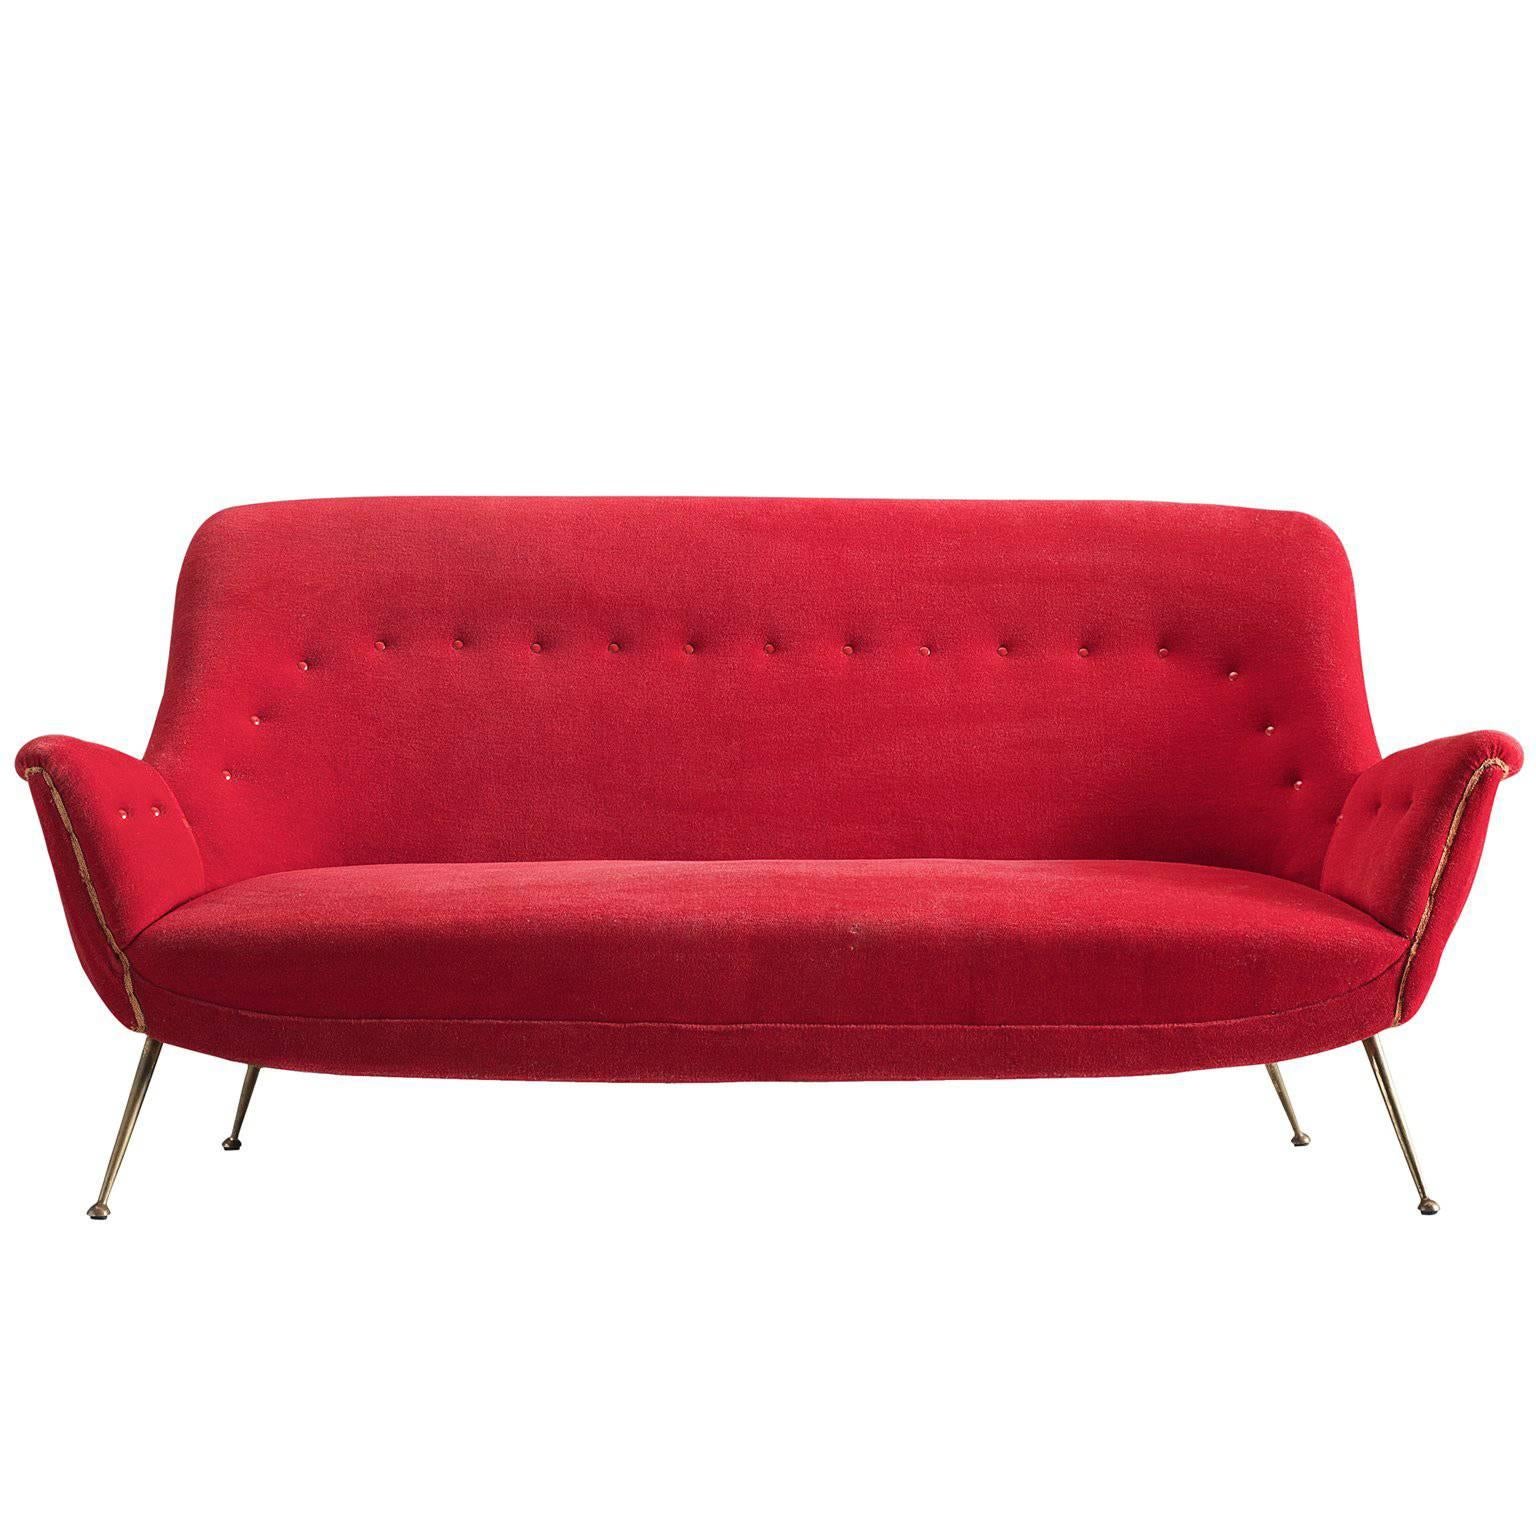 Venetian Red Fabric Italian Sofa, 1950s